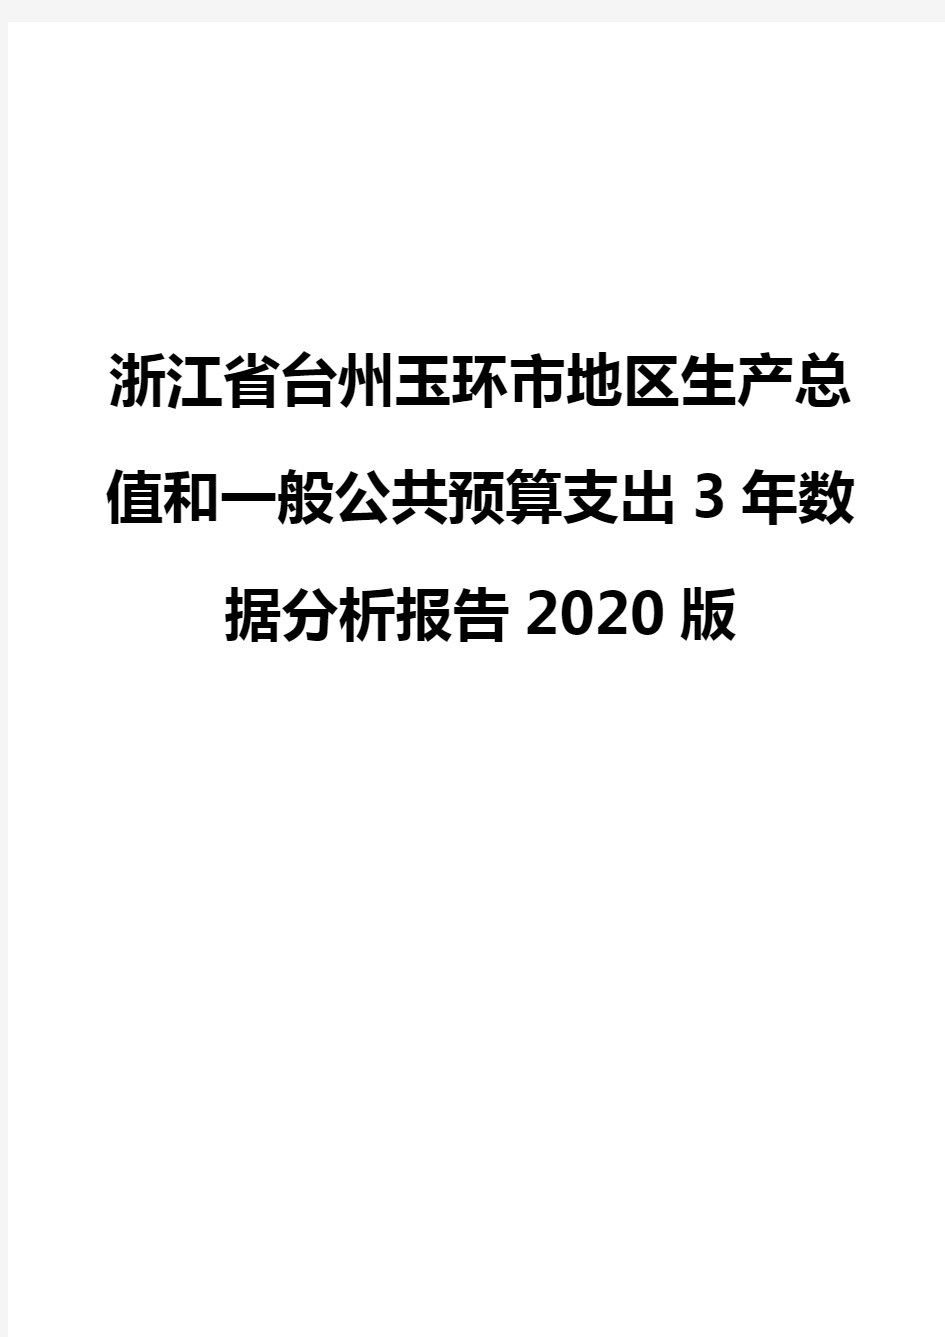 浙江省台州玉环市地区生产总值和一般公共预算支出3年数据分析报告2020版